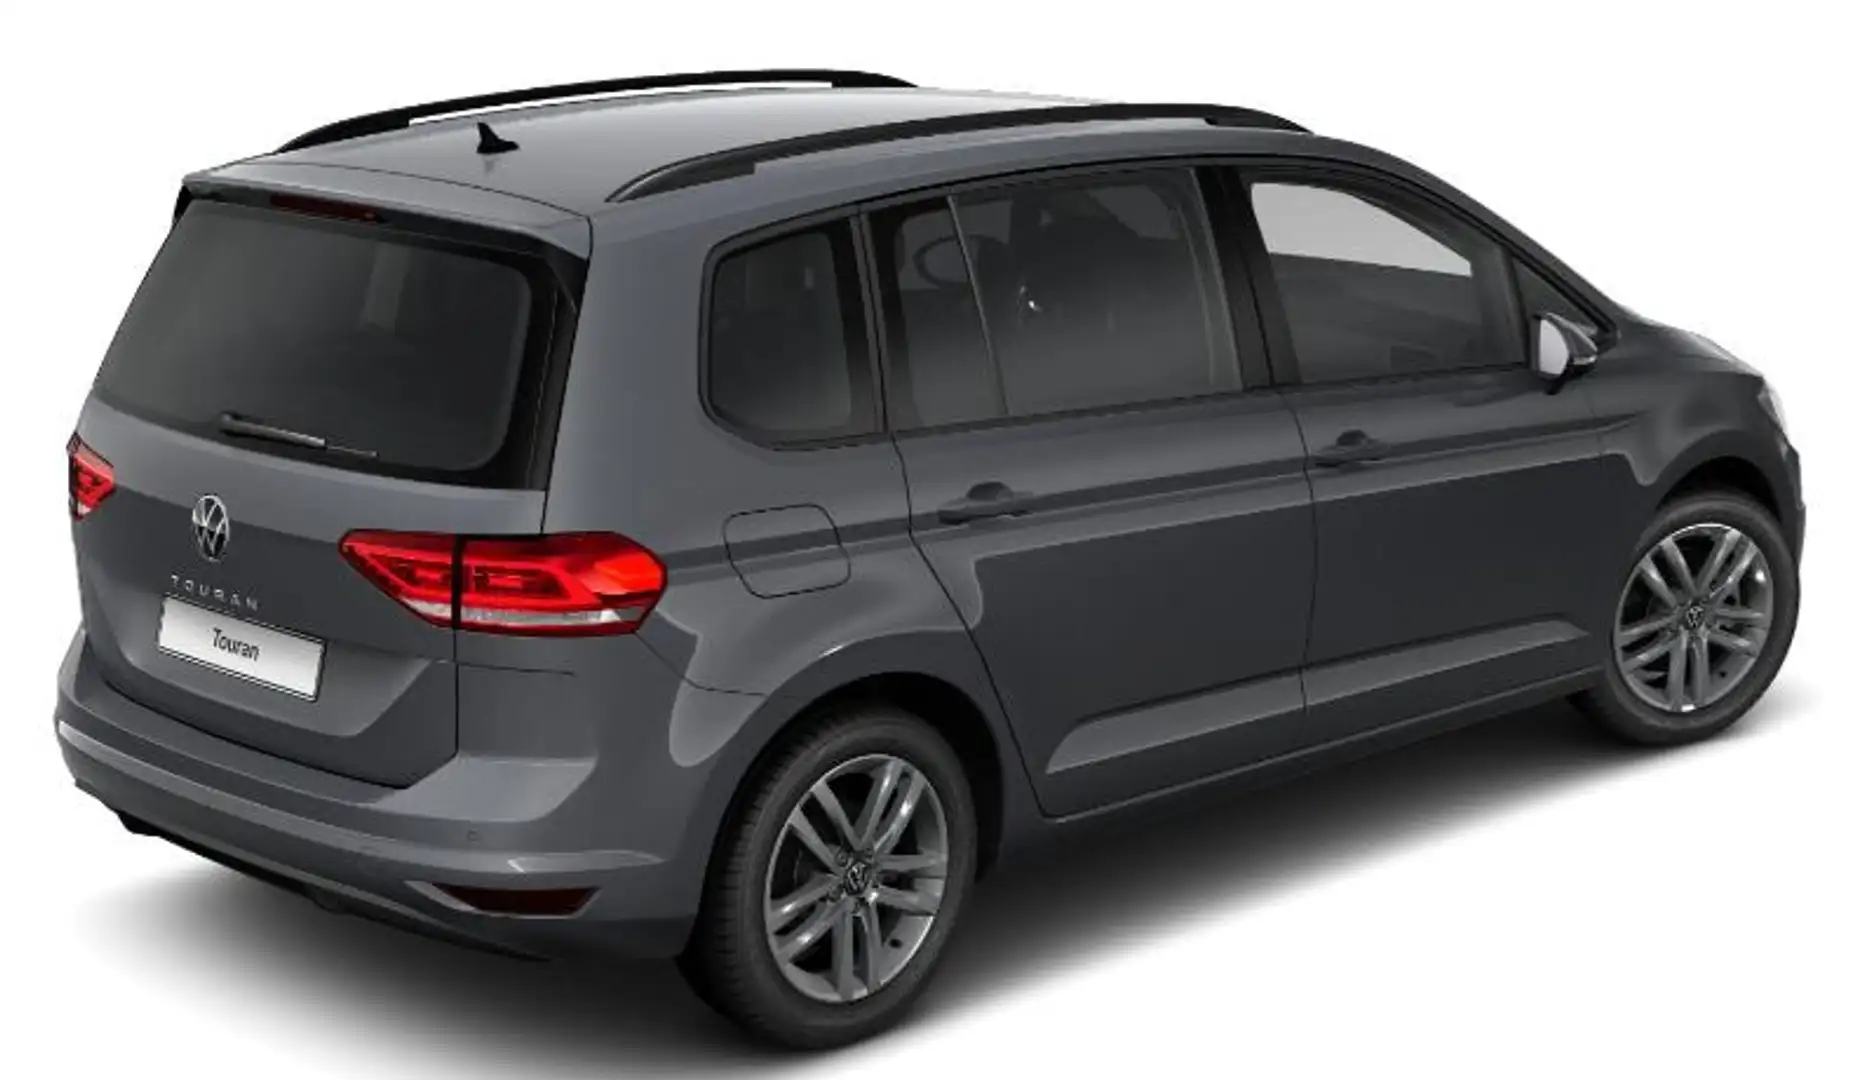 Volkswagen Touran Comfortline 2.0 TDI 122PS, Klima, Parksensoren ... - 2